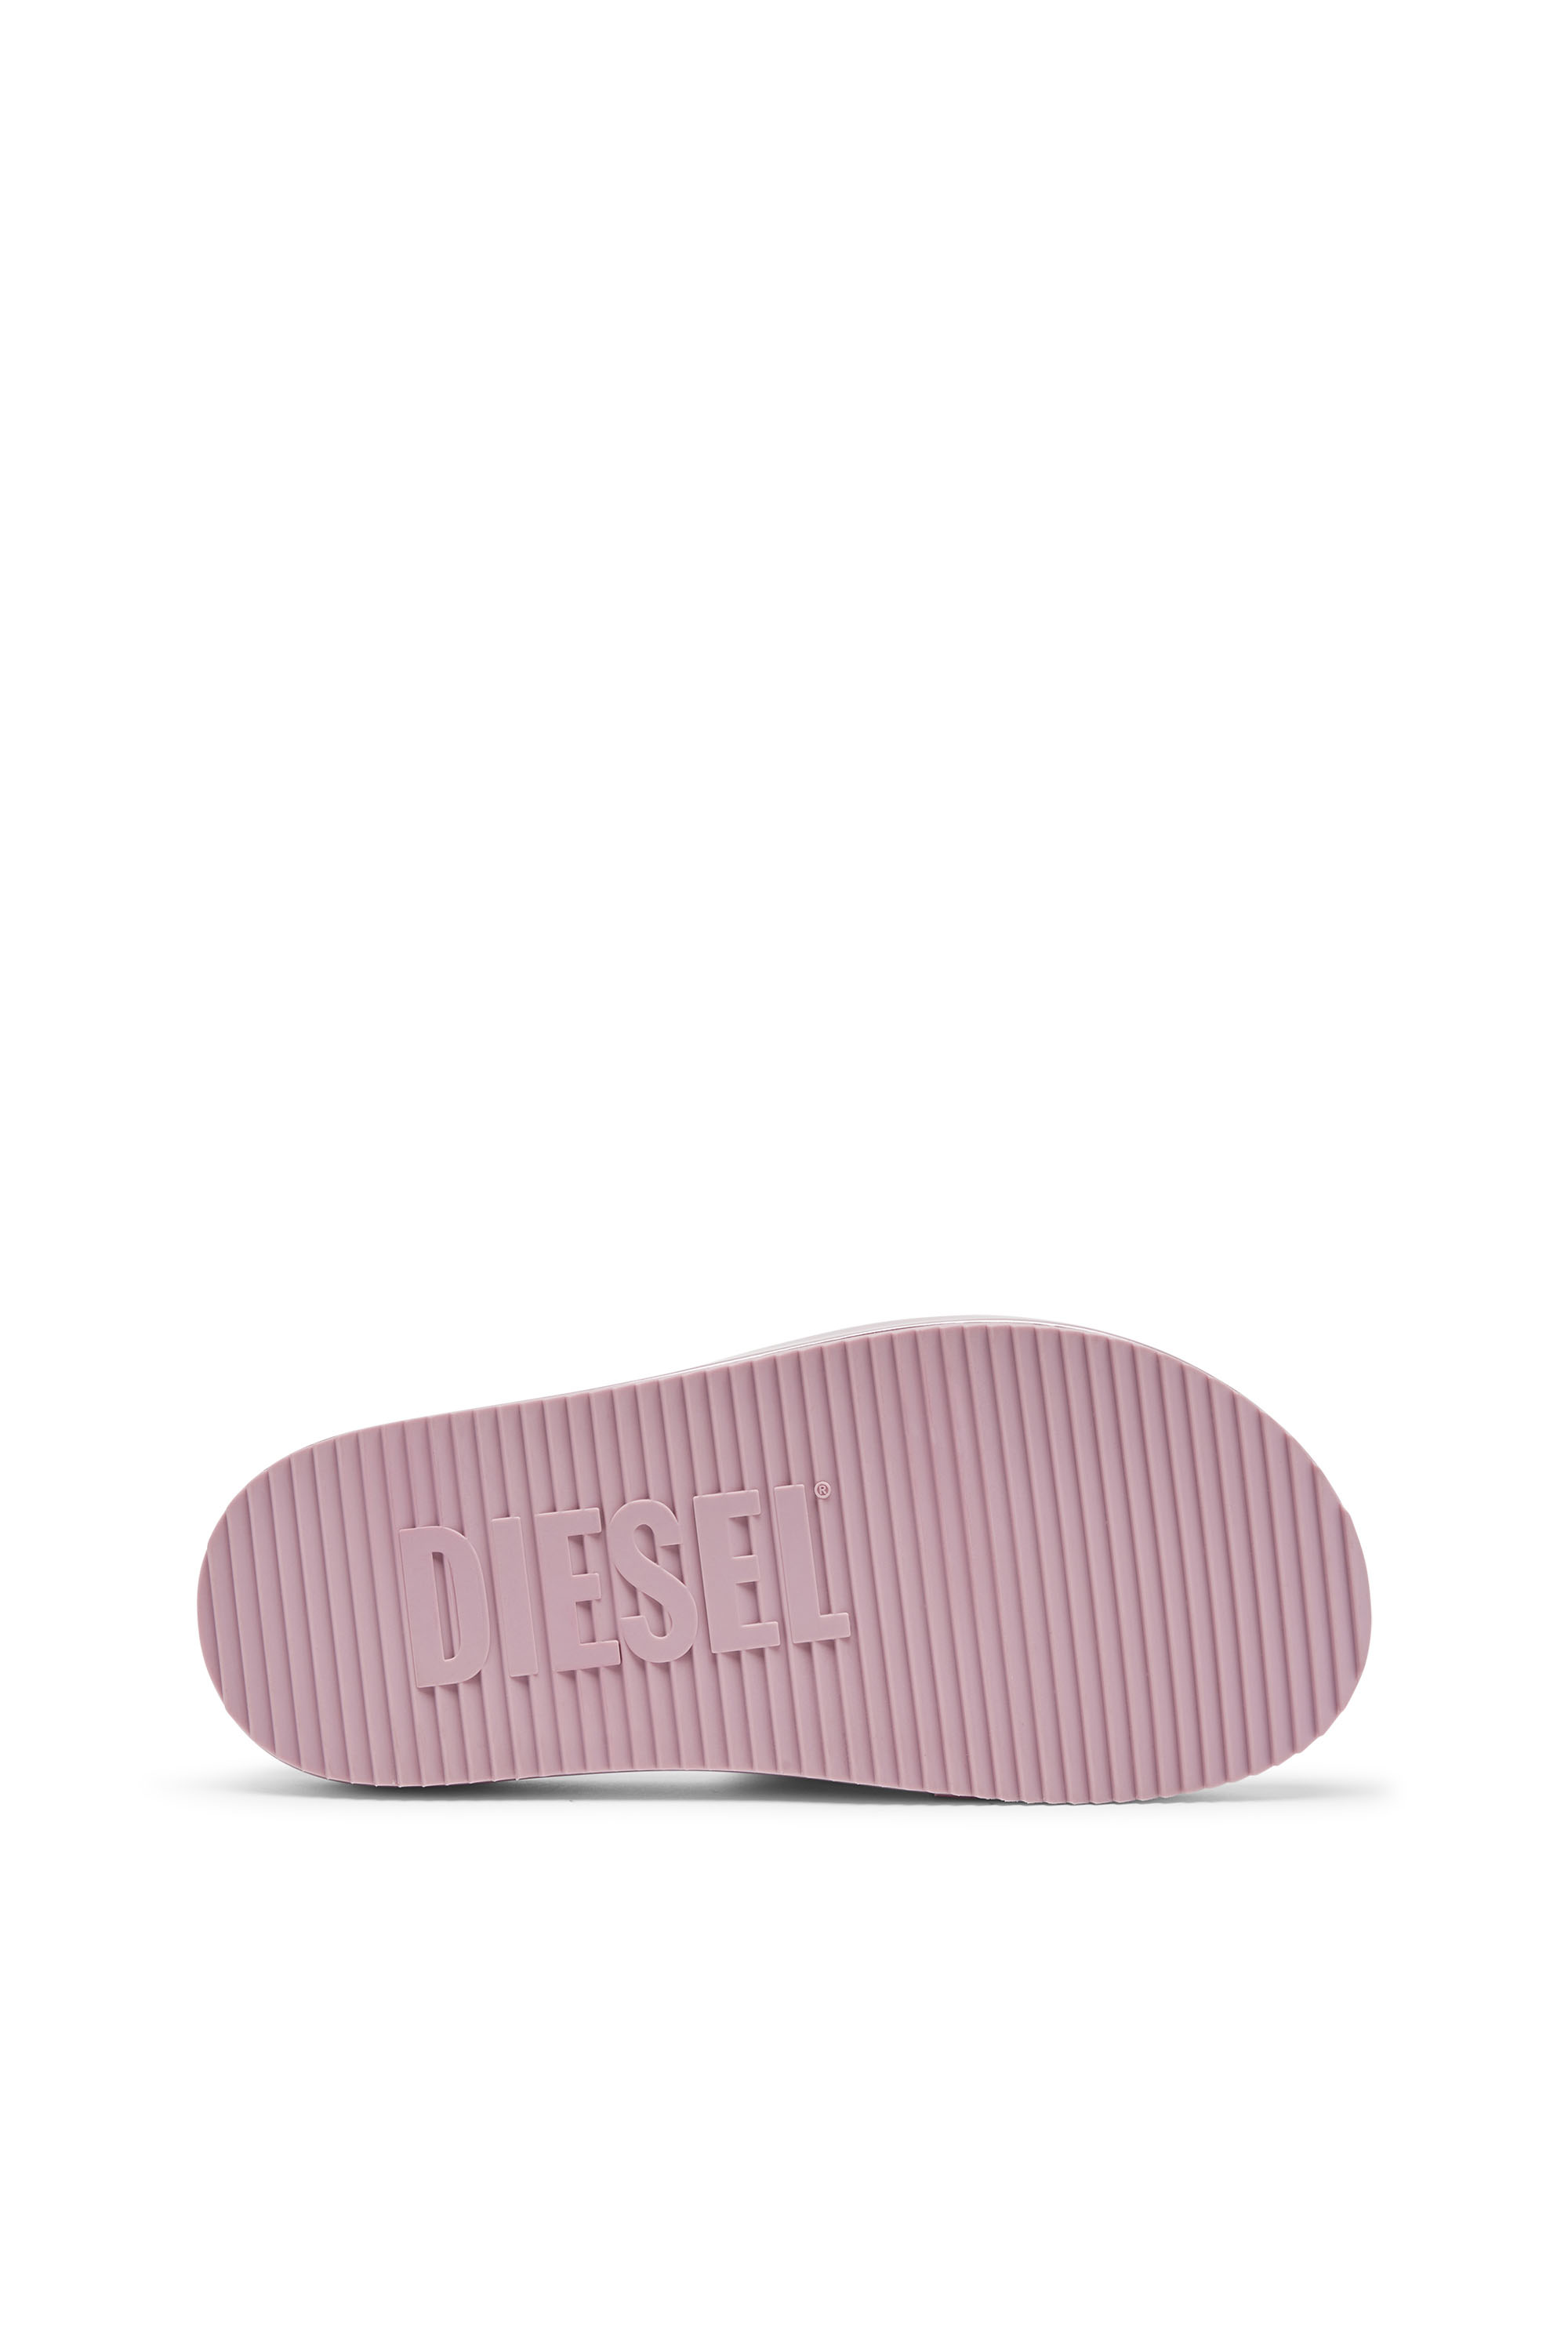 Diesel - SA-SLIDE D OVAL W, Woman Sa-Slide D-Metallic slide sandals with Oval D strap in Violet - Image 4